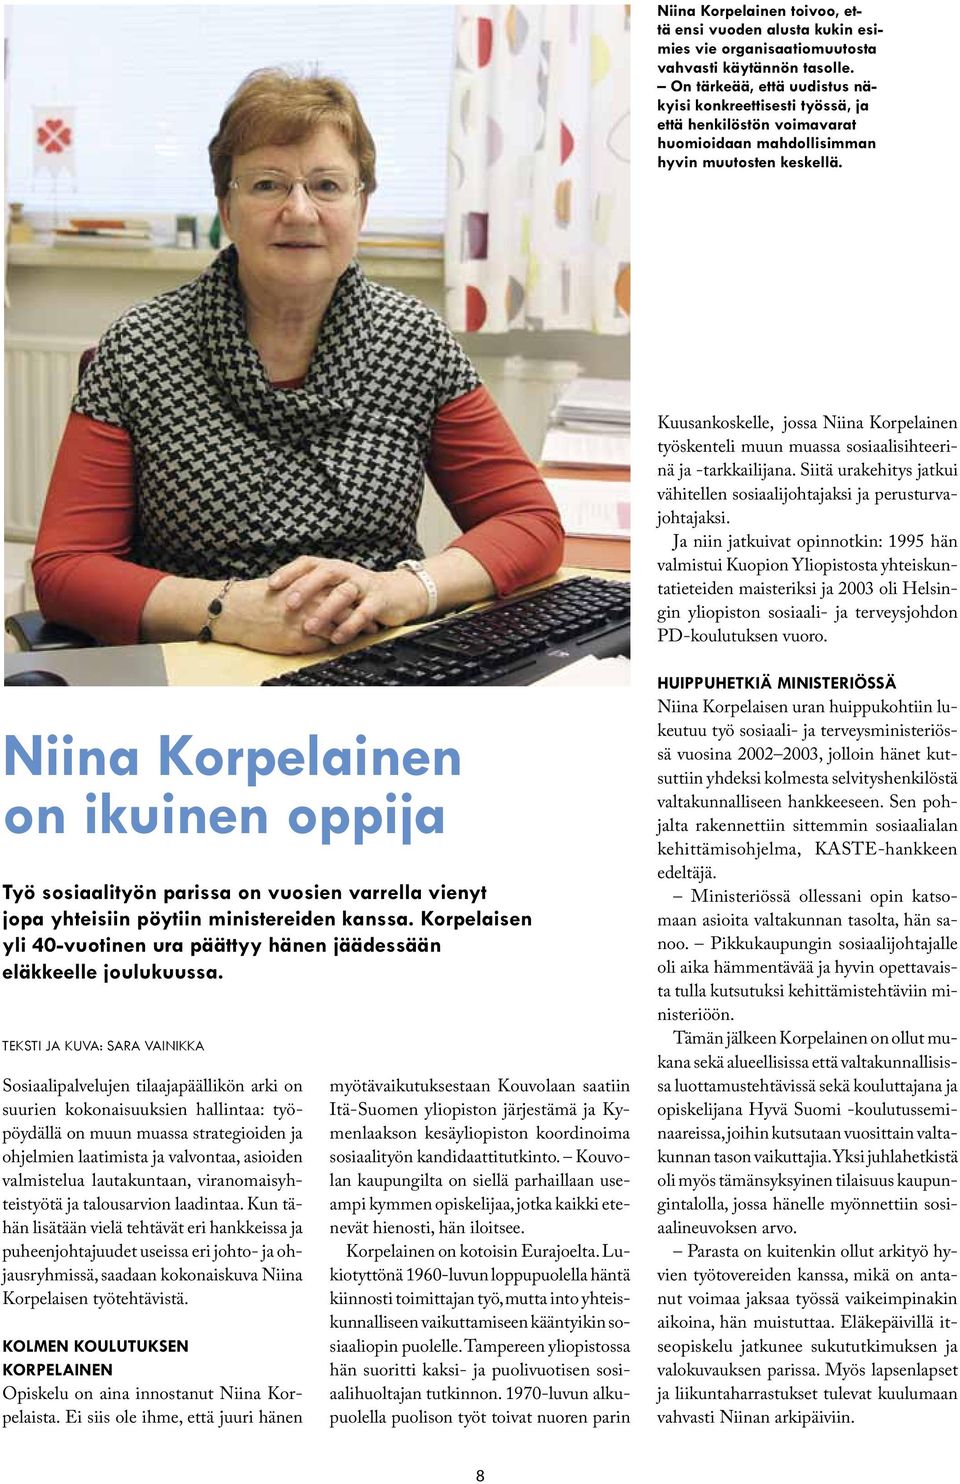 Kuusankoskelle, jossa Niina Korpelainen työskenteli muun muassa sosiaalisihteerinä ja -tarkkailijana. Siitä urakehitys jatkui vähitellen sosiaalijohtajaksi ja perusturvajohtajaksi.